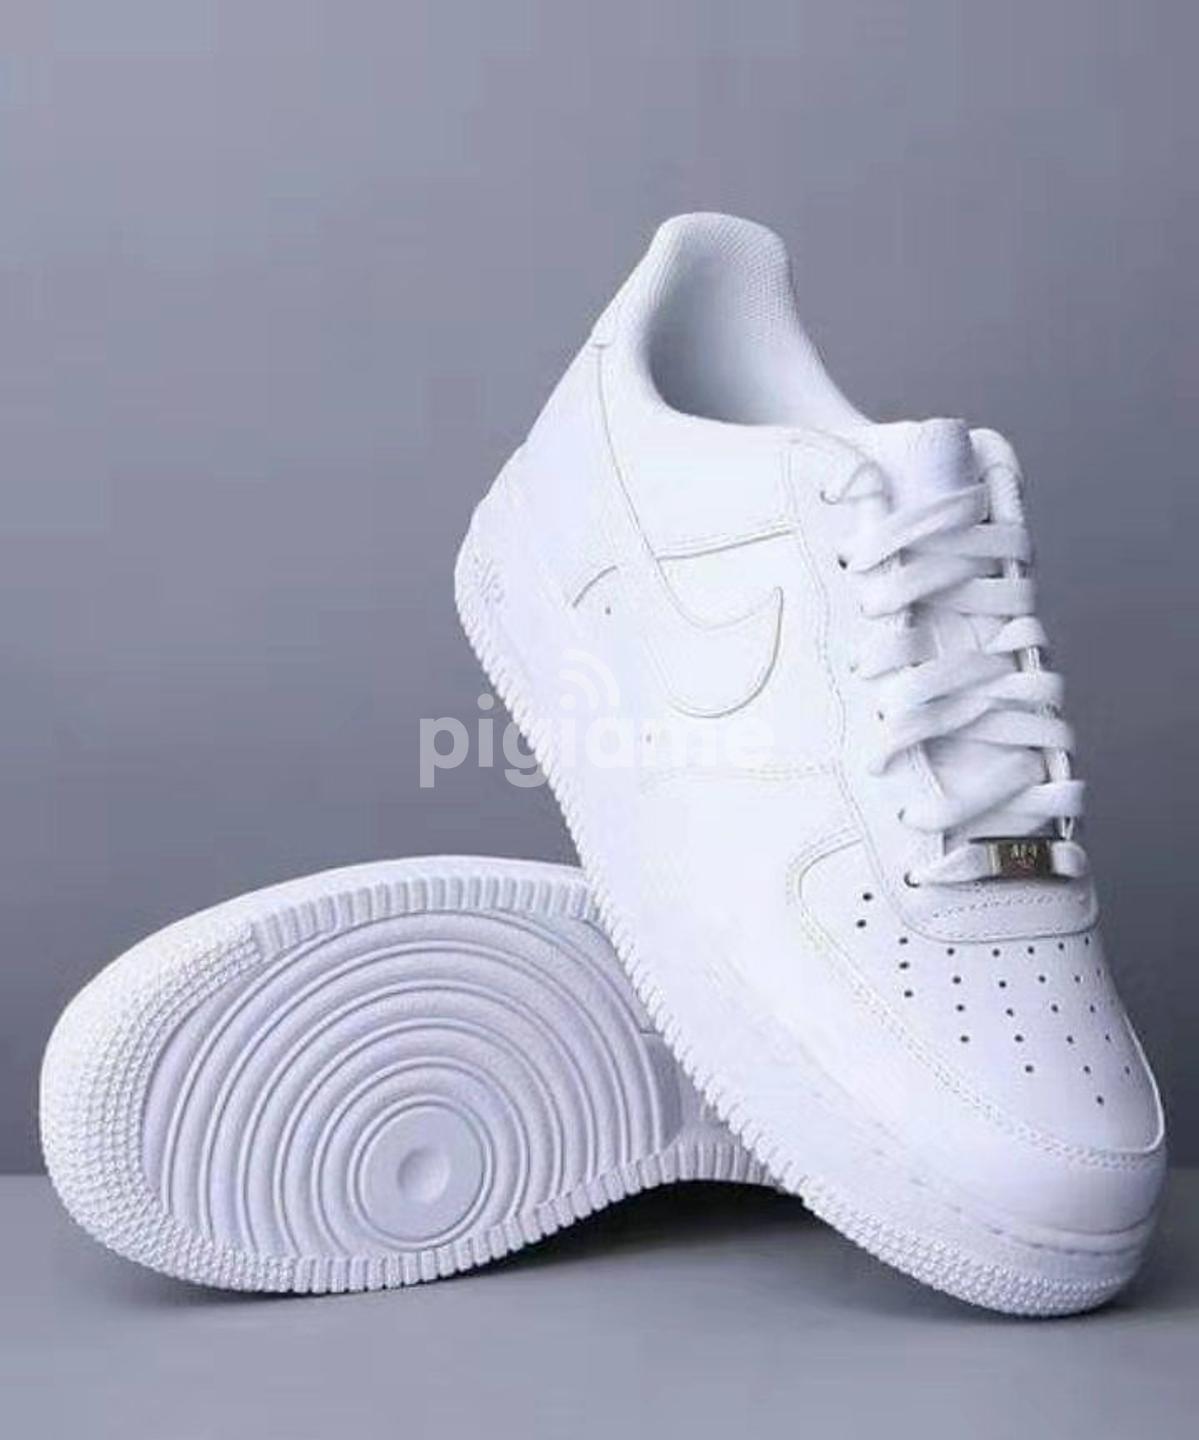 nike plain white shoes